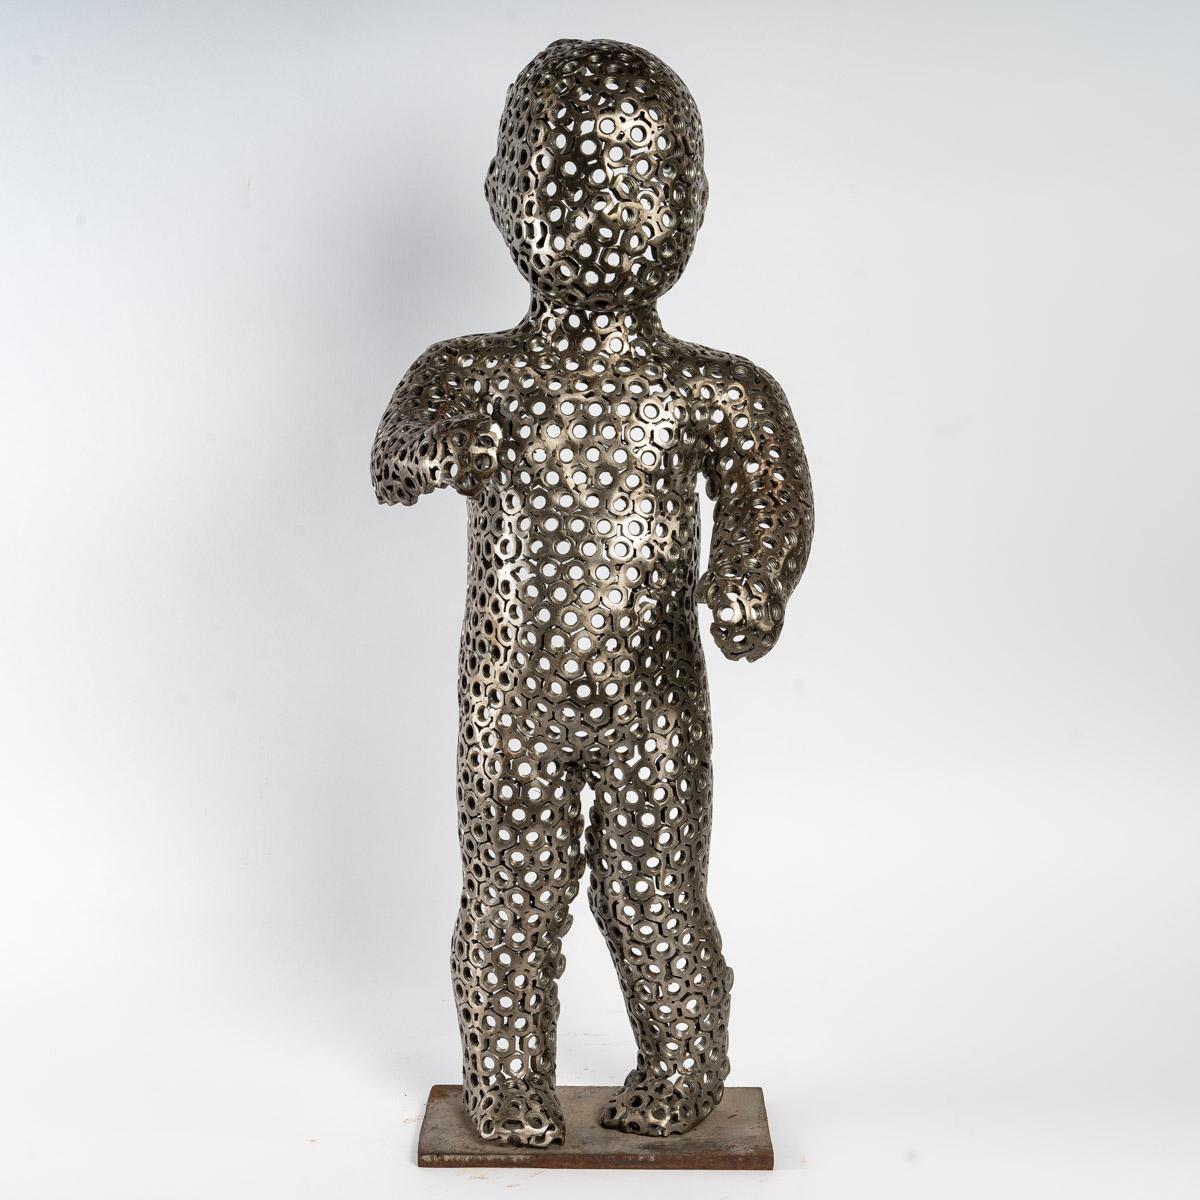 Bolt sculpture of a child, 20th century, contemporary art.
Measures: H: 77 cm, W: 28 cm, D: 12 cm
Ref 3147.